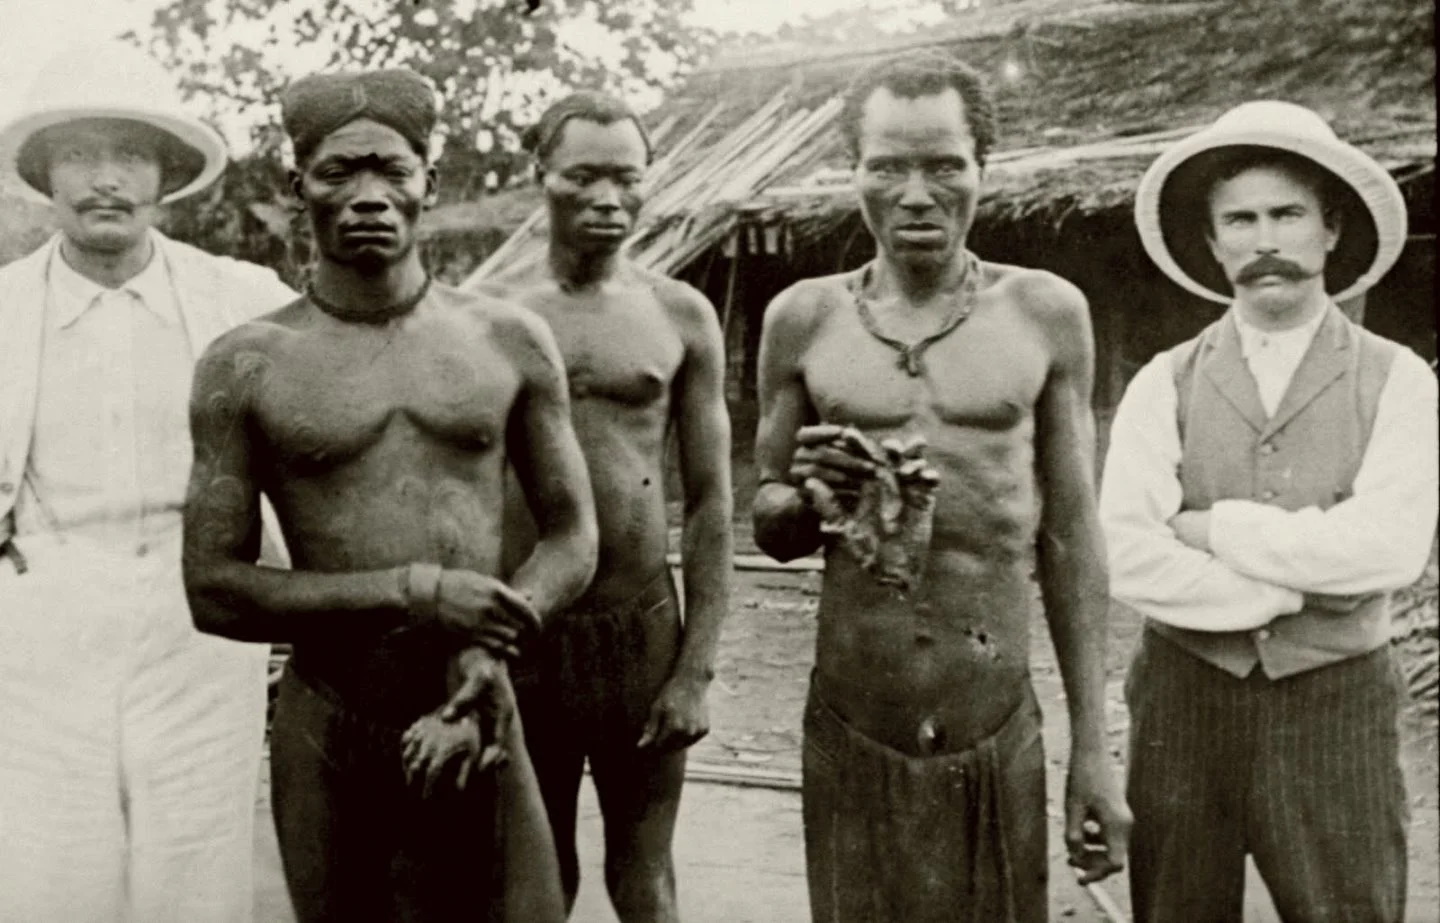 За невыполнение норм колонизаторы отрубали руки жителям Конго. Фото XIX века